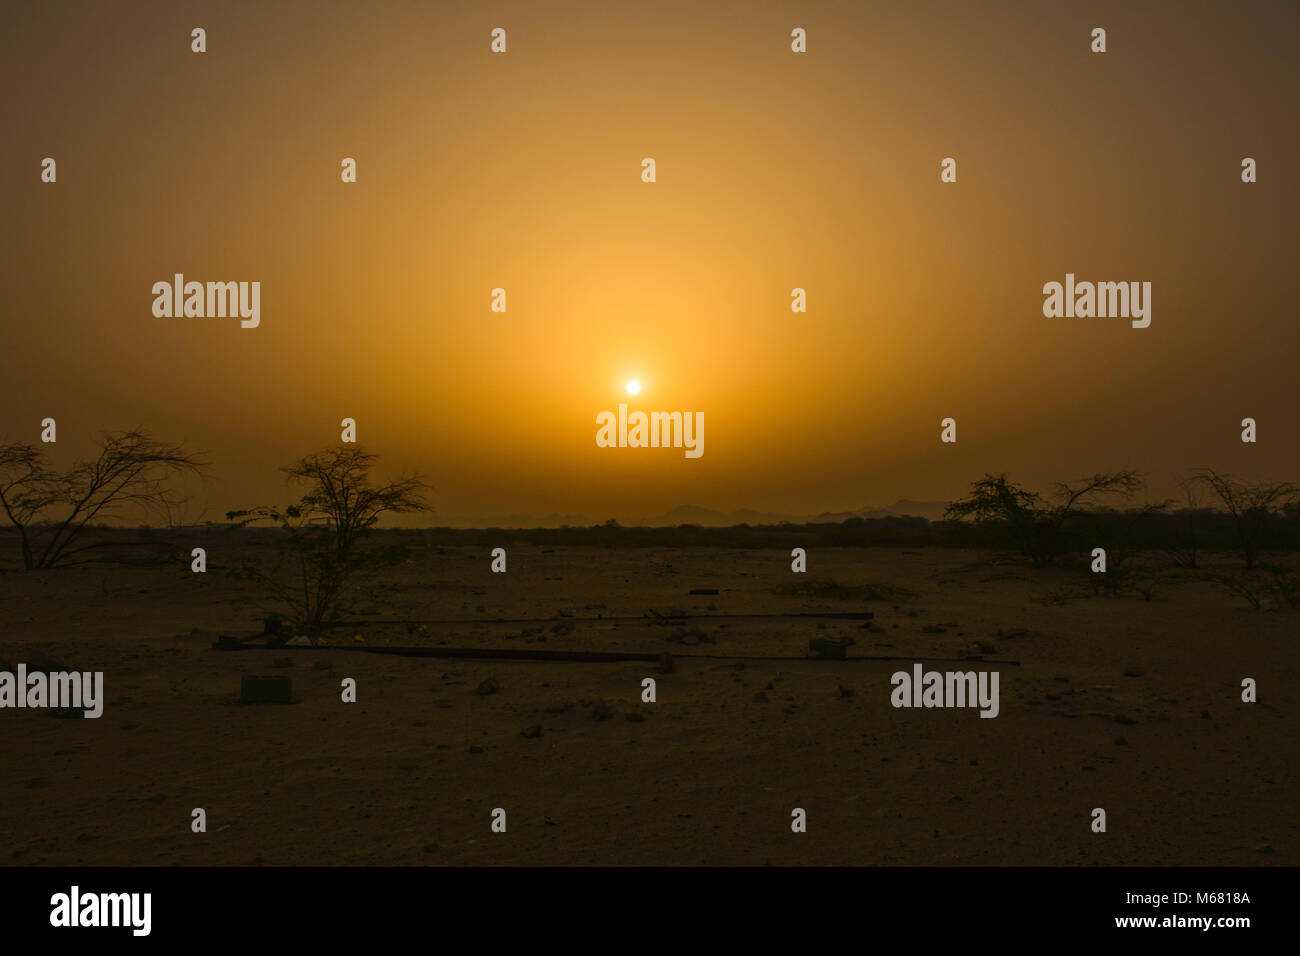 Sunset in desert Stock Photo